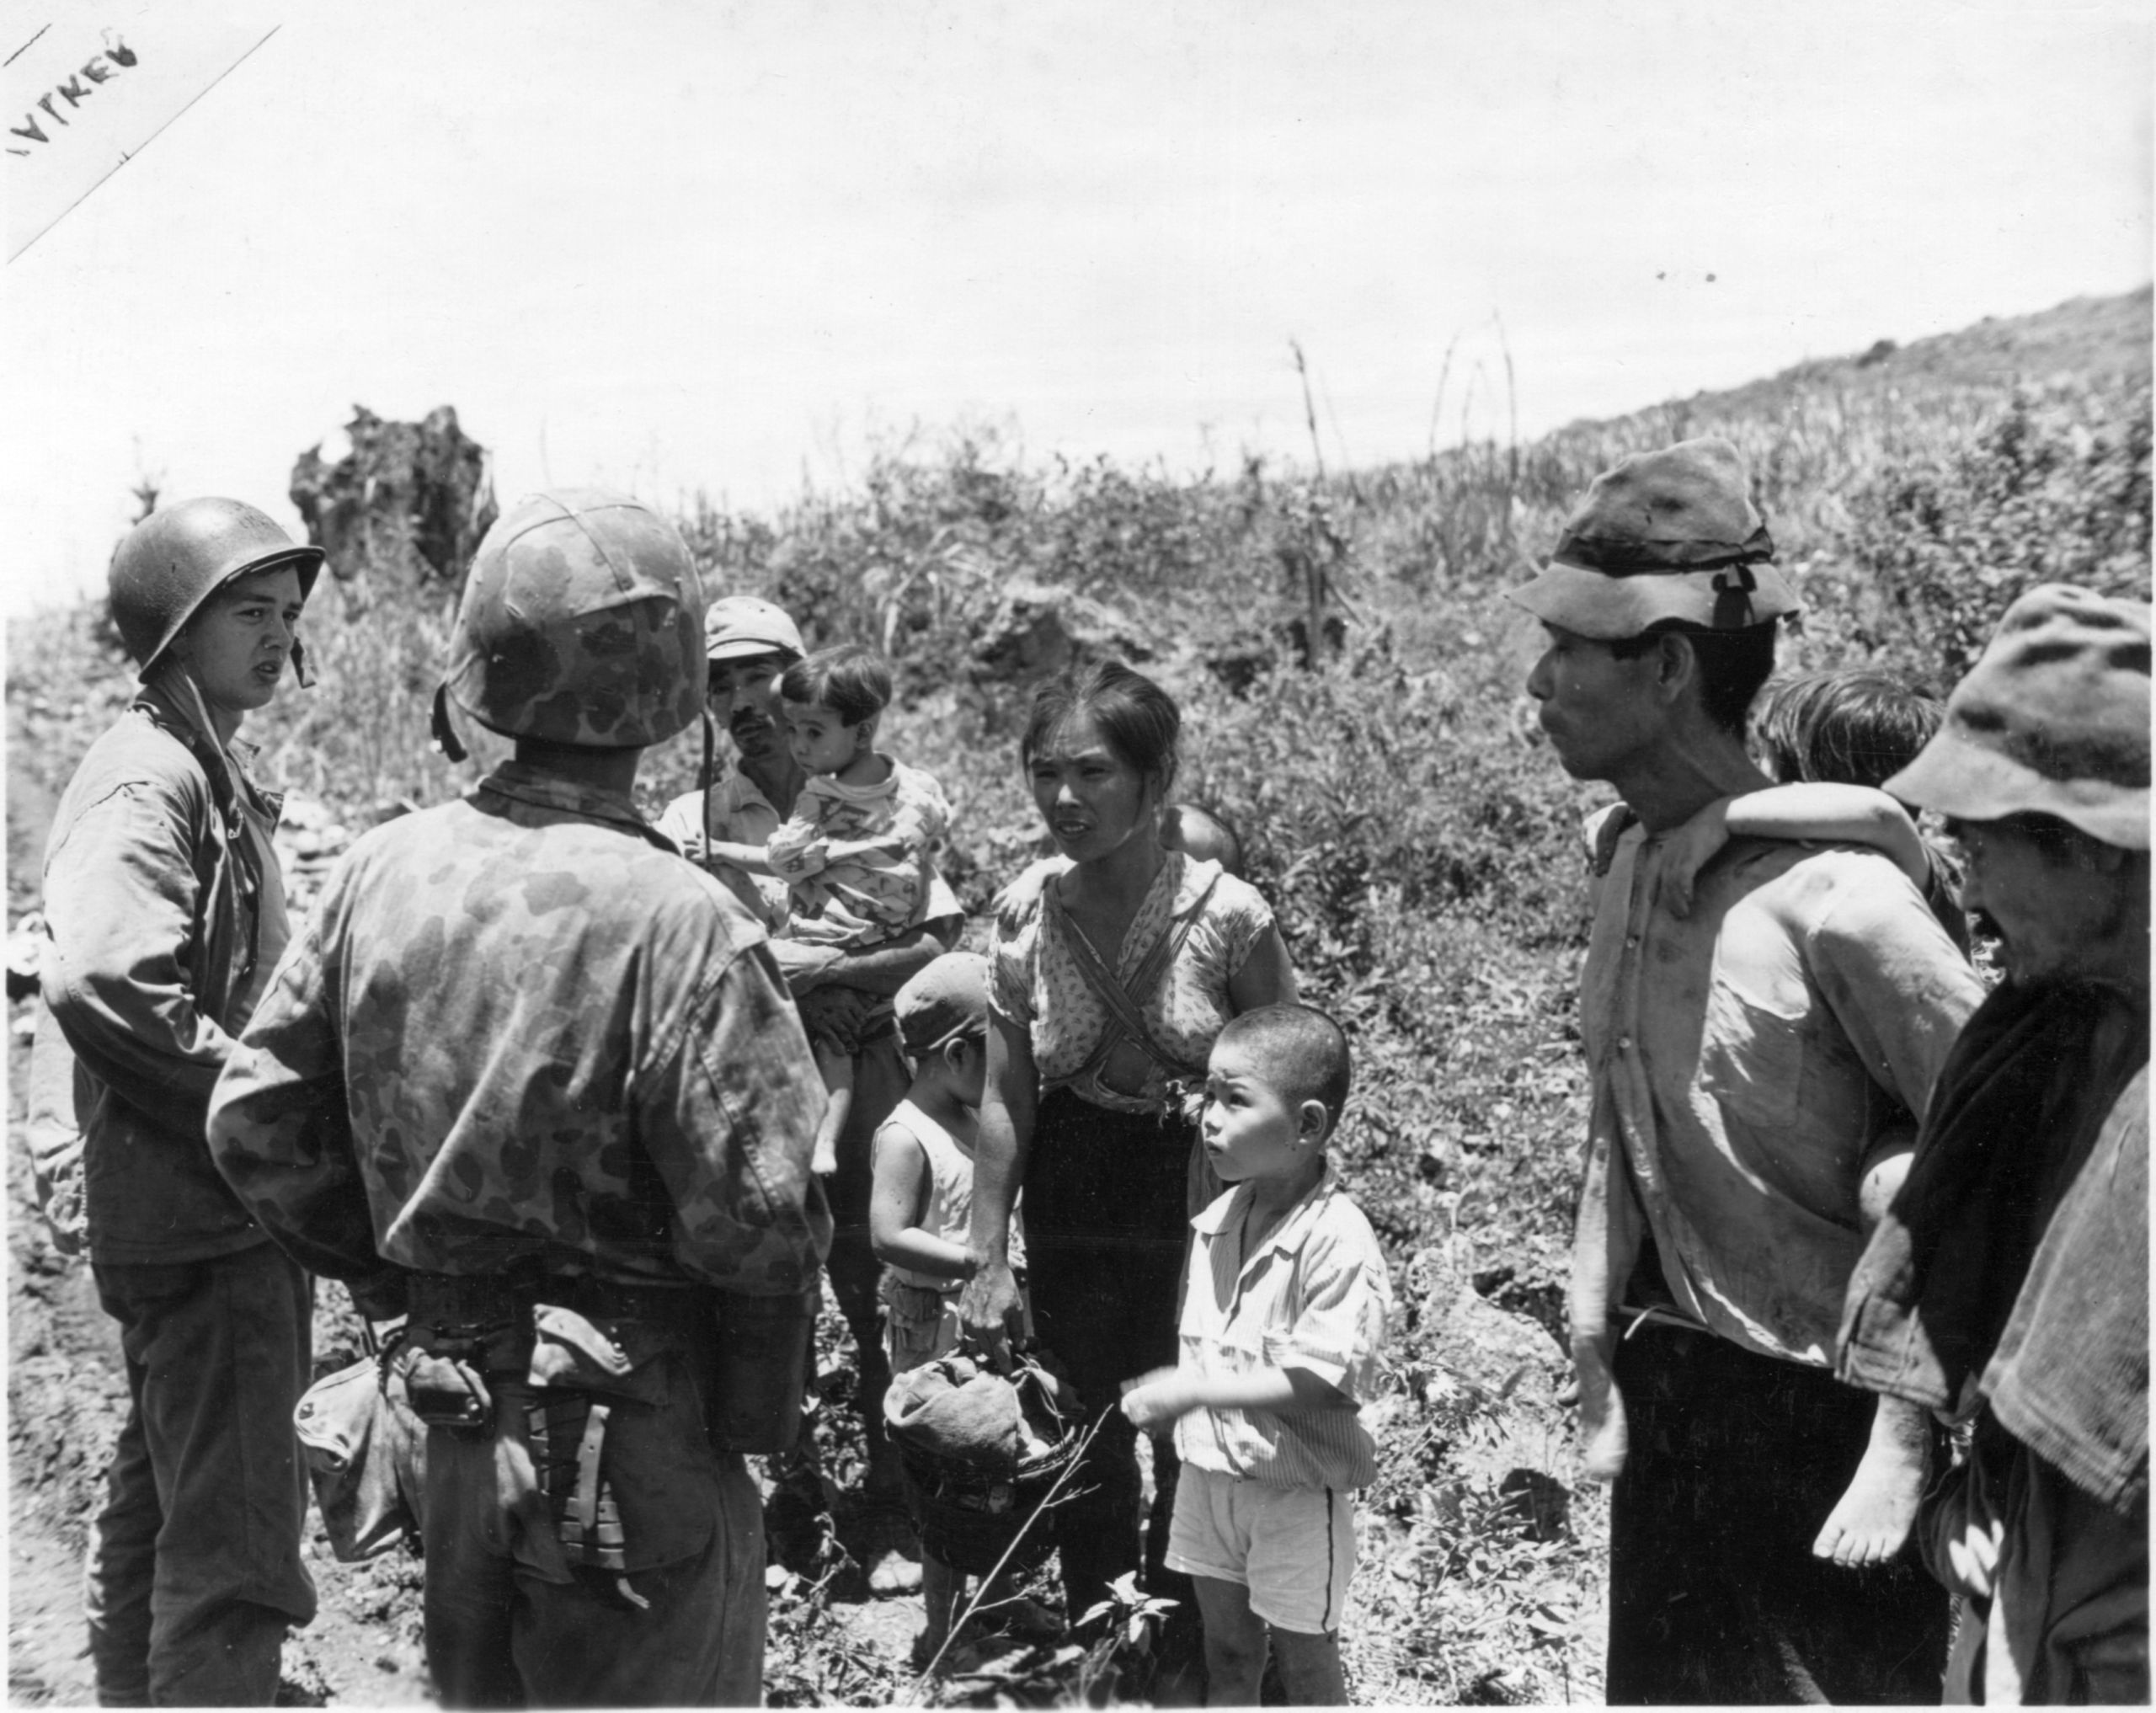 ロビー展 新規公開写真資料展 サイパン テニアン島の戦い 沖縄県公文書館